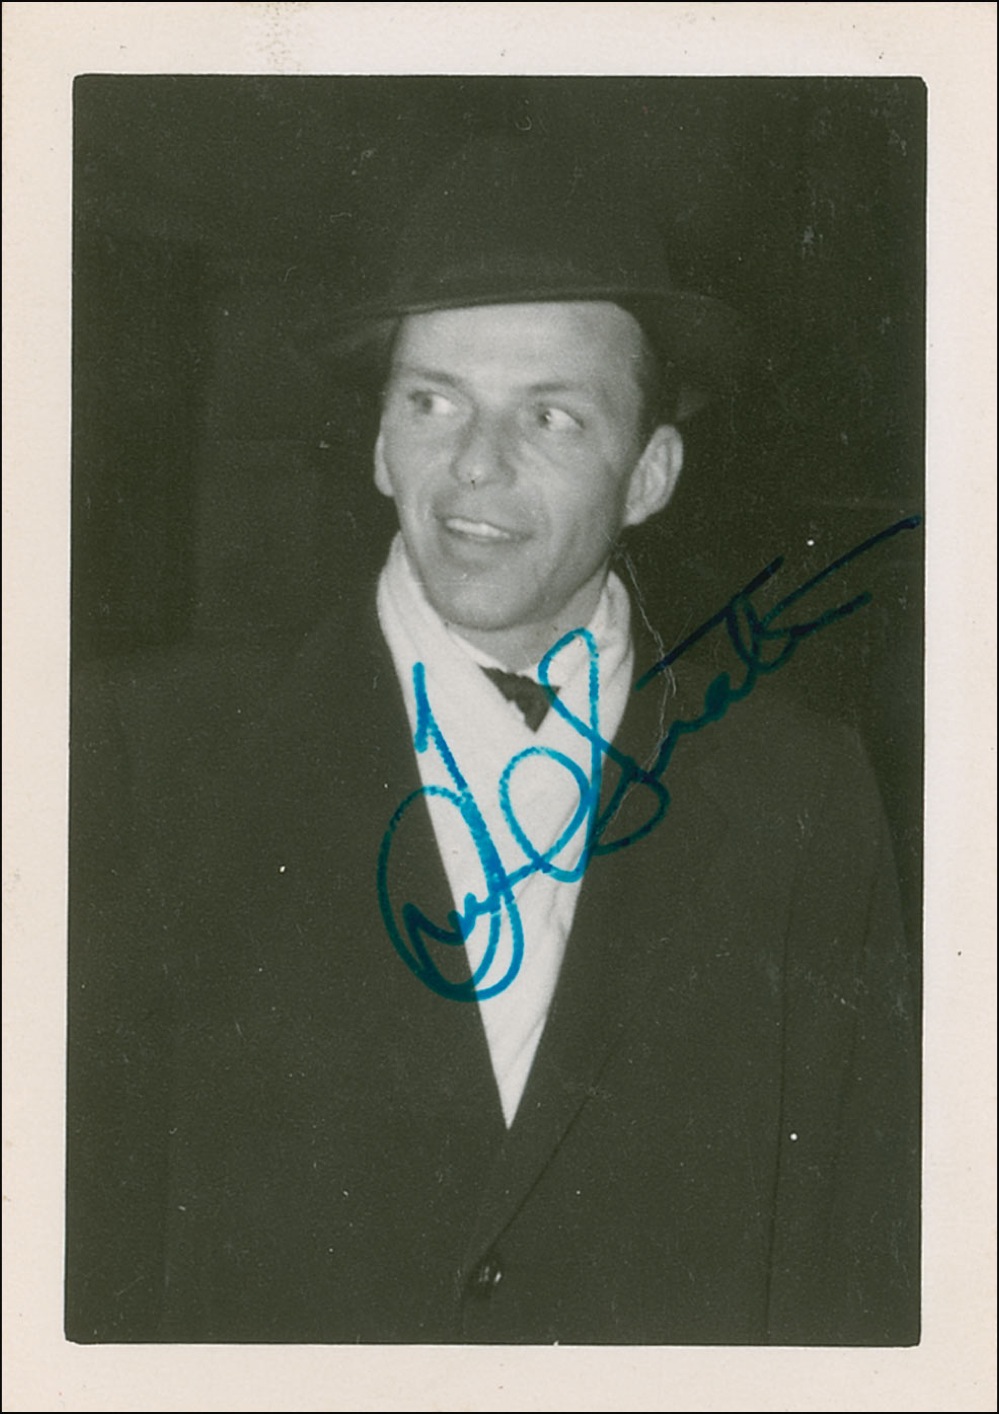 Lot #571 Frank Sinatra